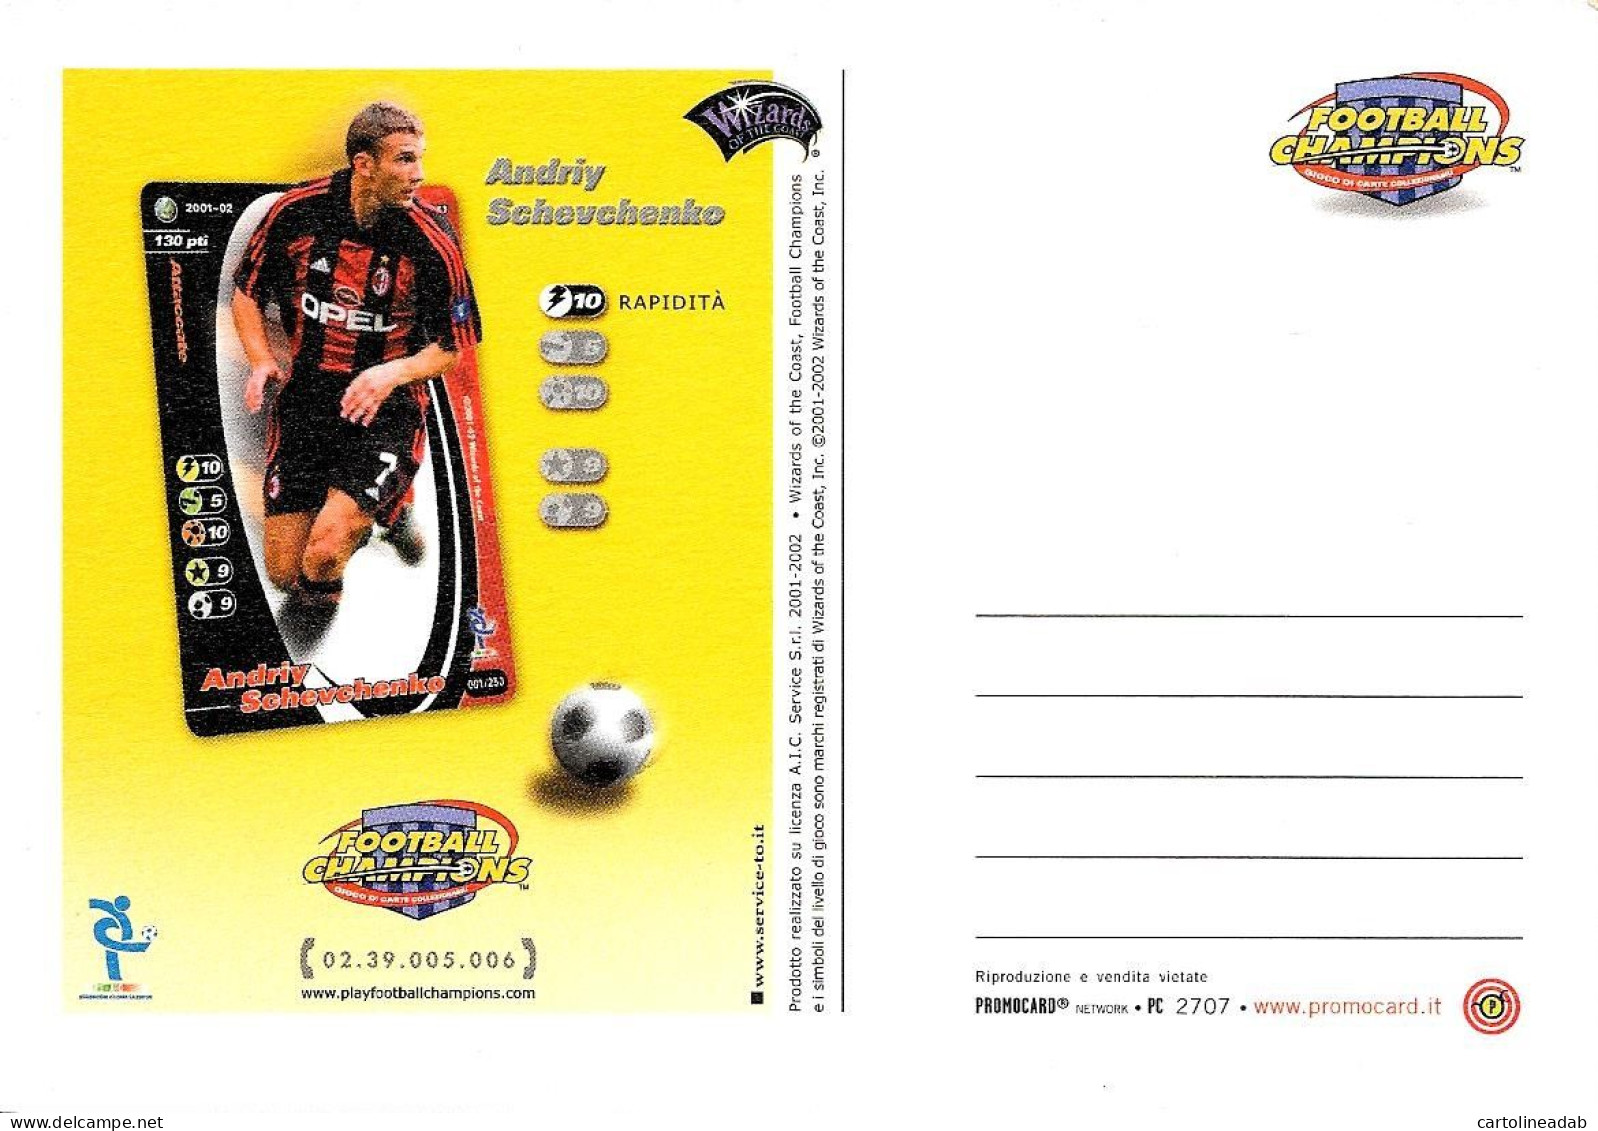 [MD9597] CPM - ANDRIY SCHEVCHENKO - FOOTBALL CHAMPIONS - PROMOCARD 2707 - PERFETTA - Non Viaggiata - Fussball